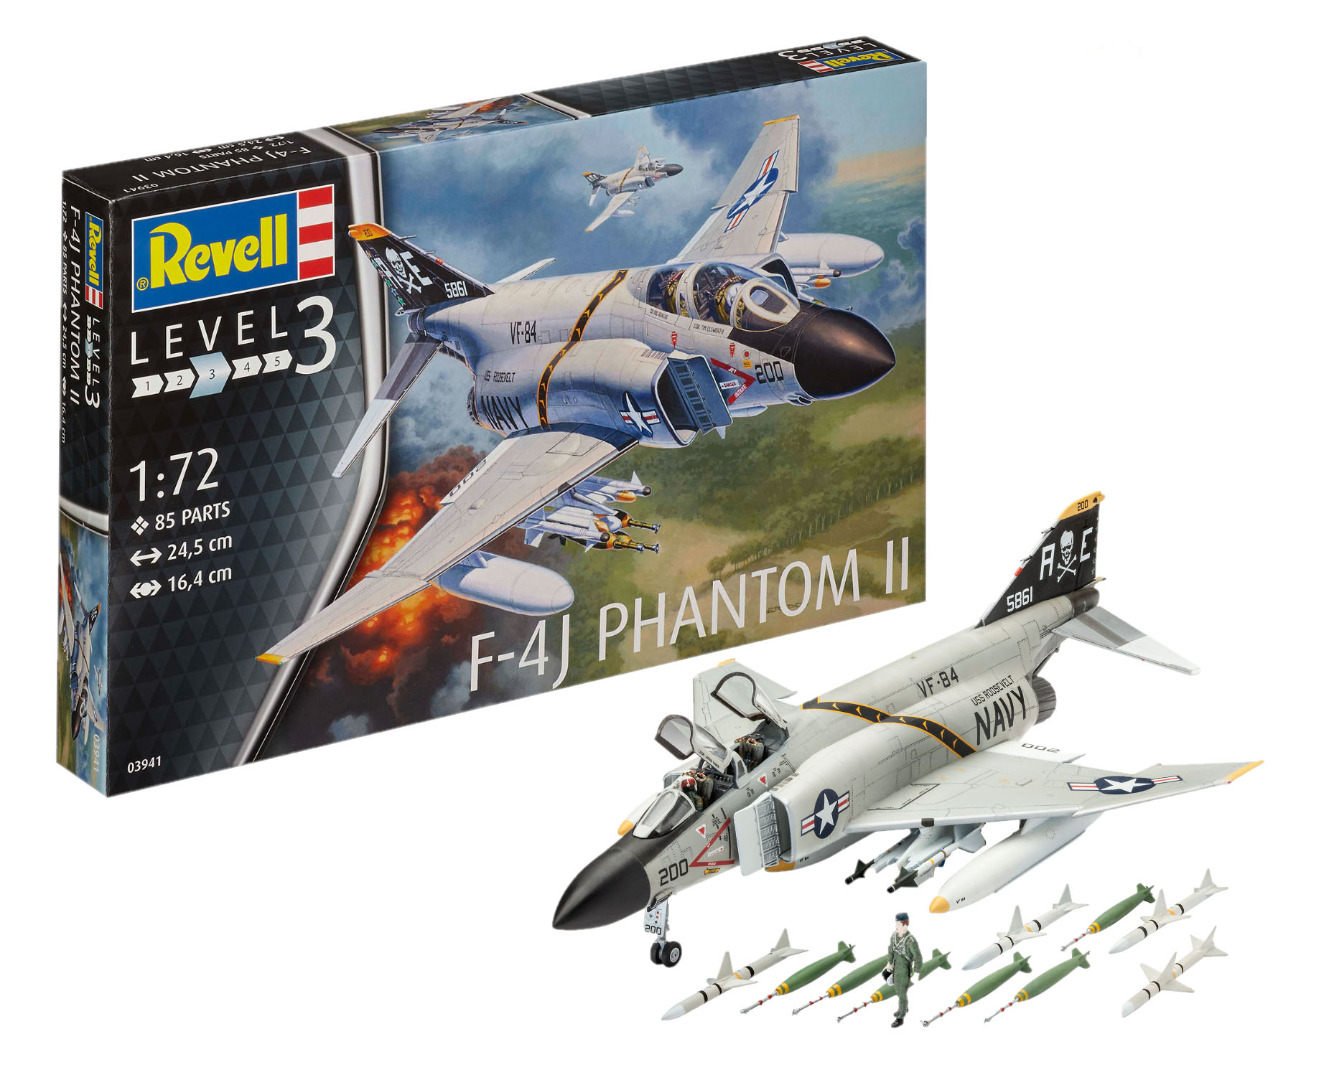 Revell Model Kit F-4J Phantom II Scale 1:72